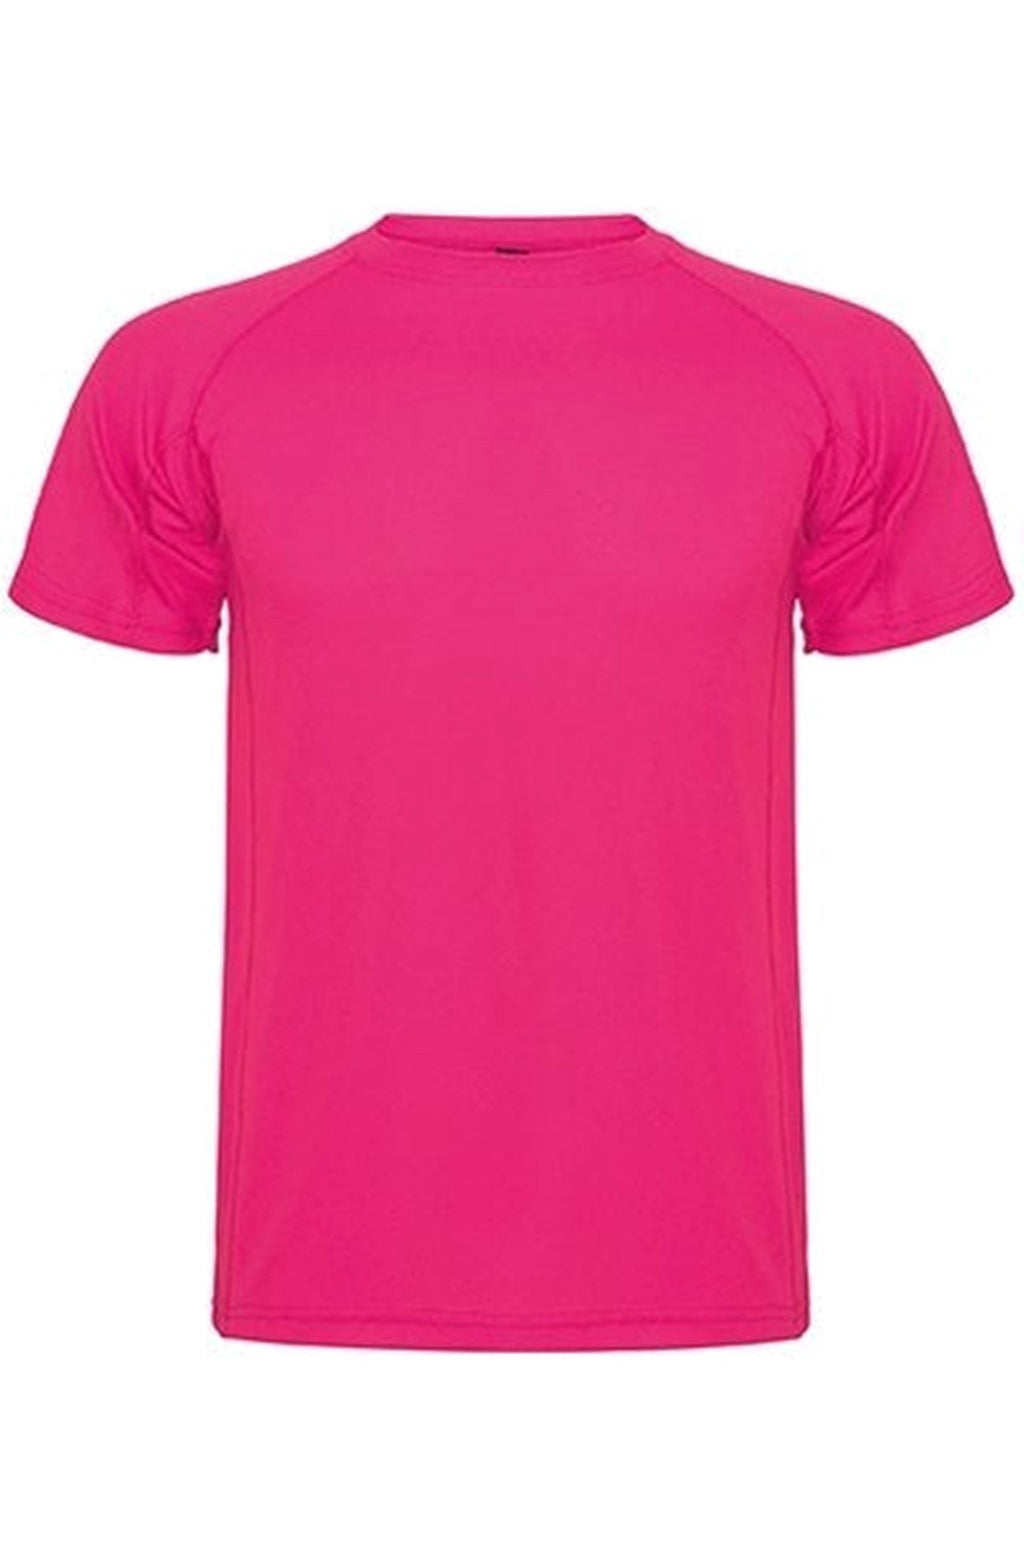 Trænings T-shirt - Pink